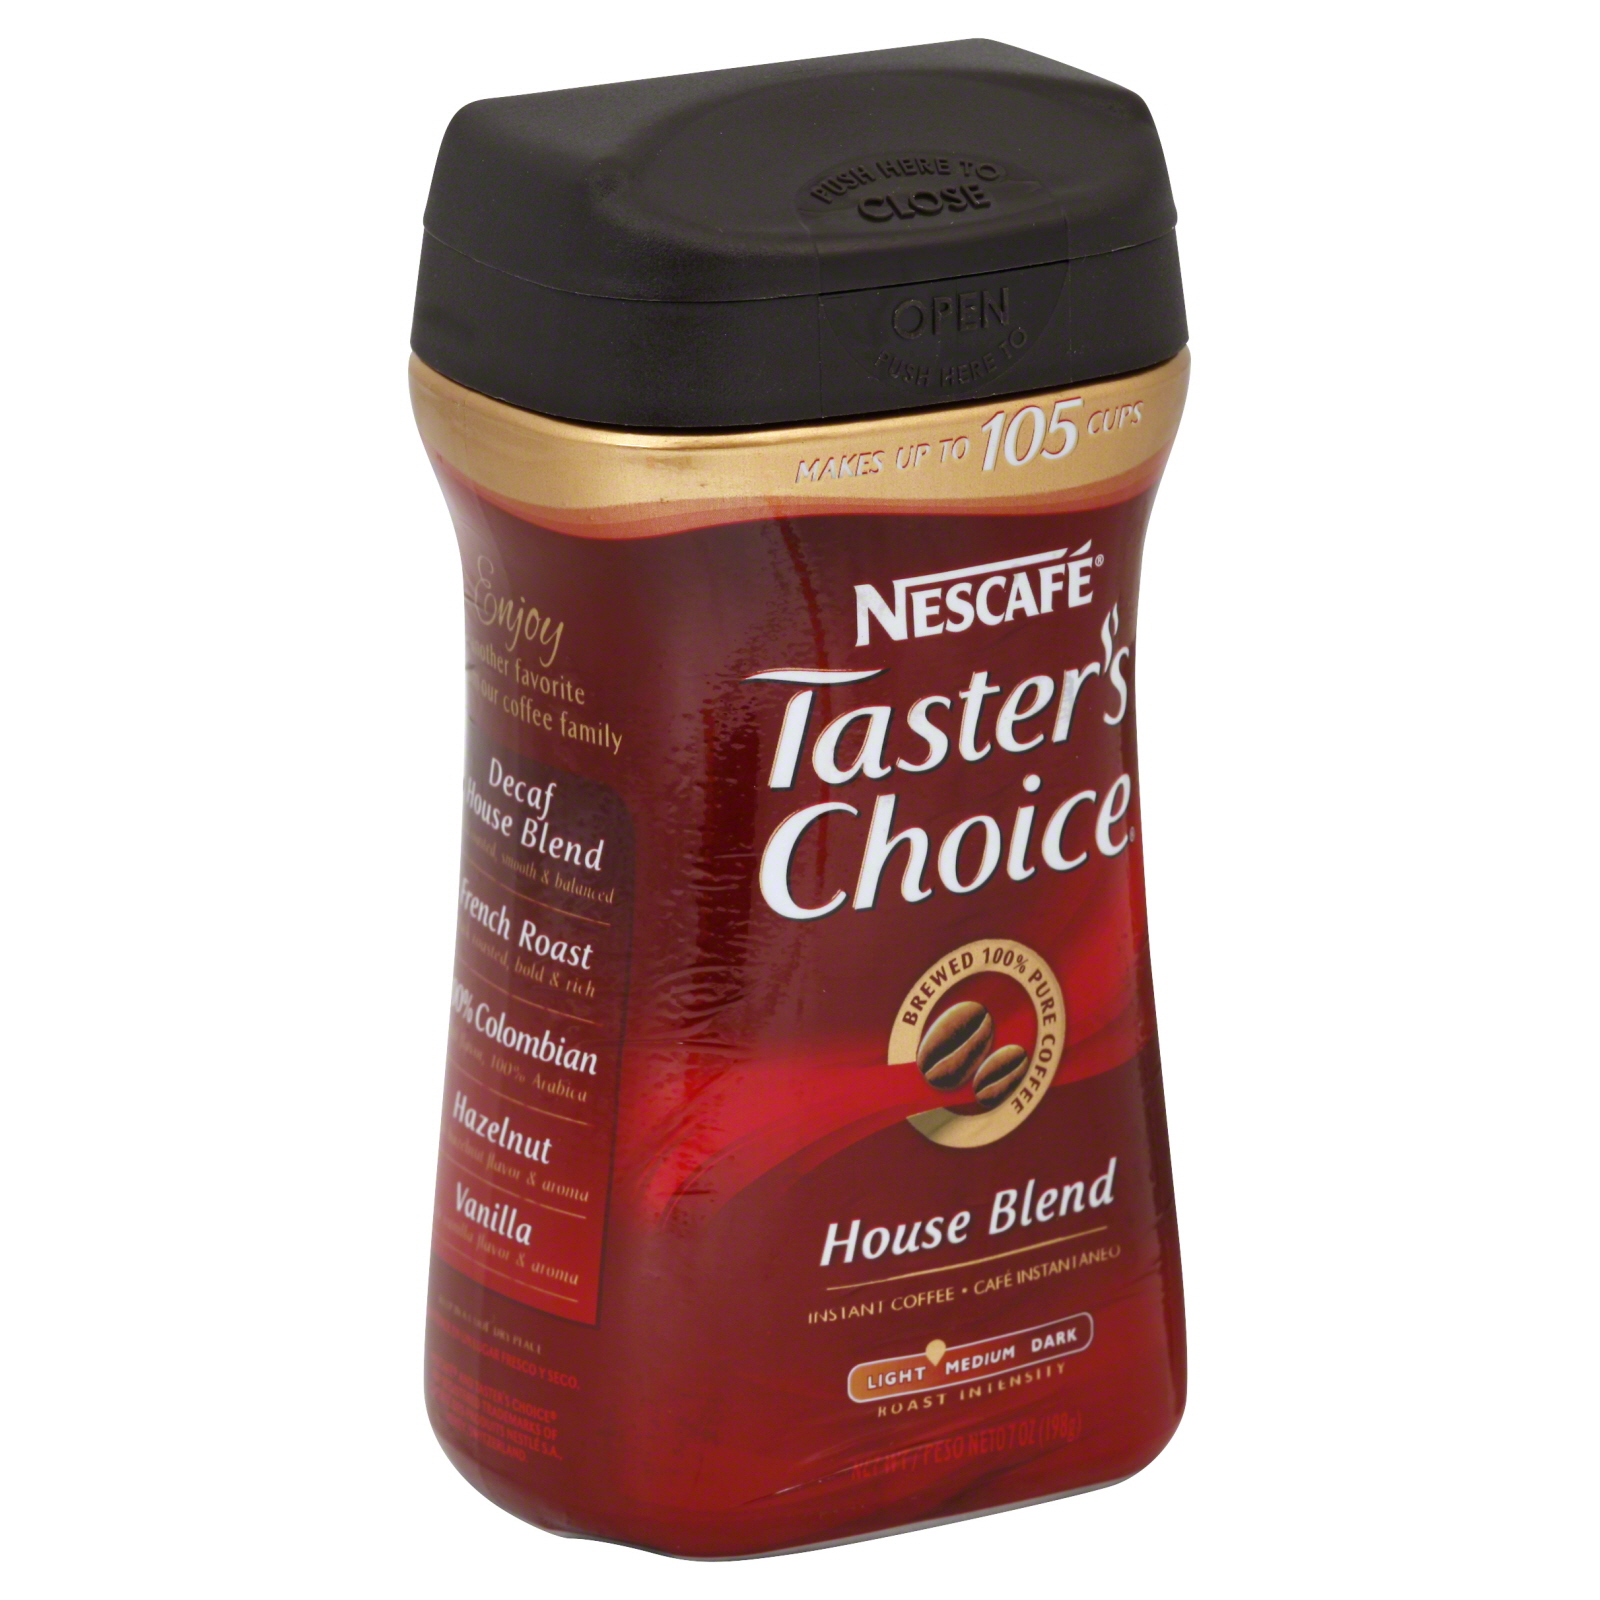 Nescafe Taster's Choice Coffee, Gourmet Instant, Original, 7 oz (198g)